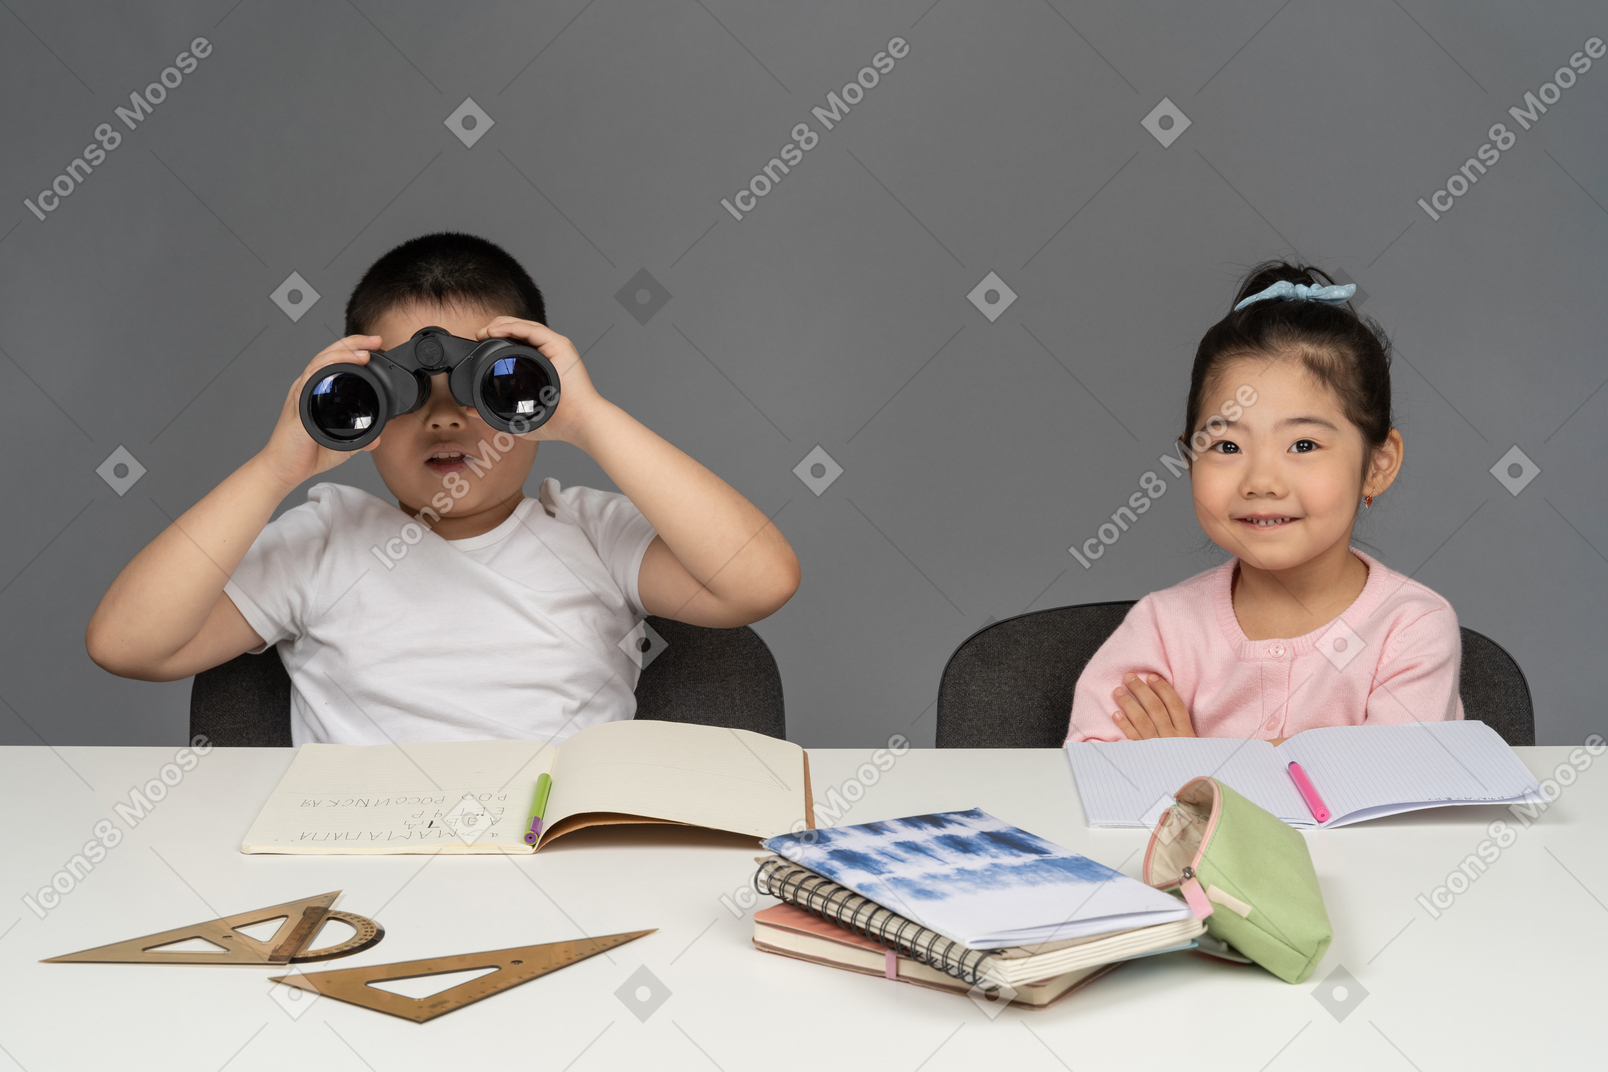 Улыбающаяся маленькая девочка и мальчик смотрят в бинокль